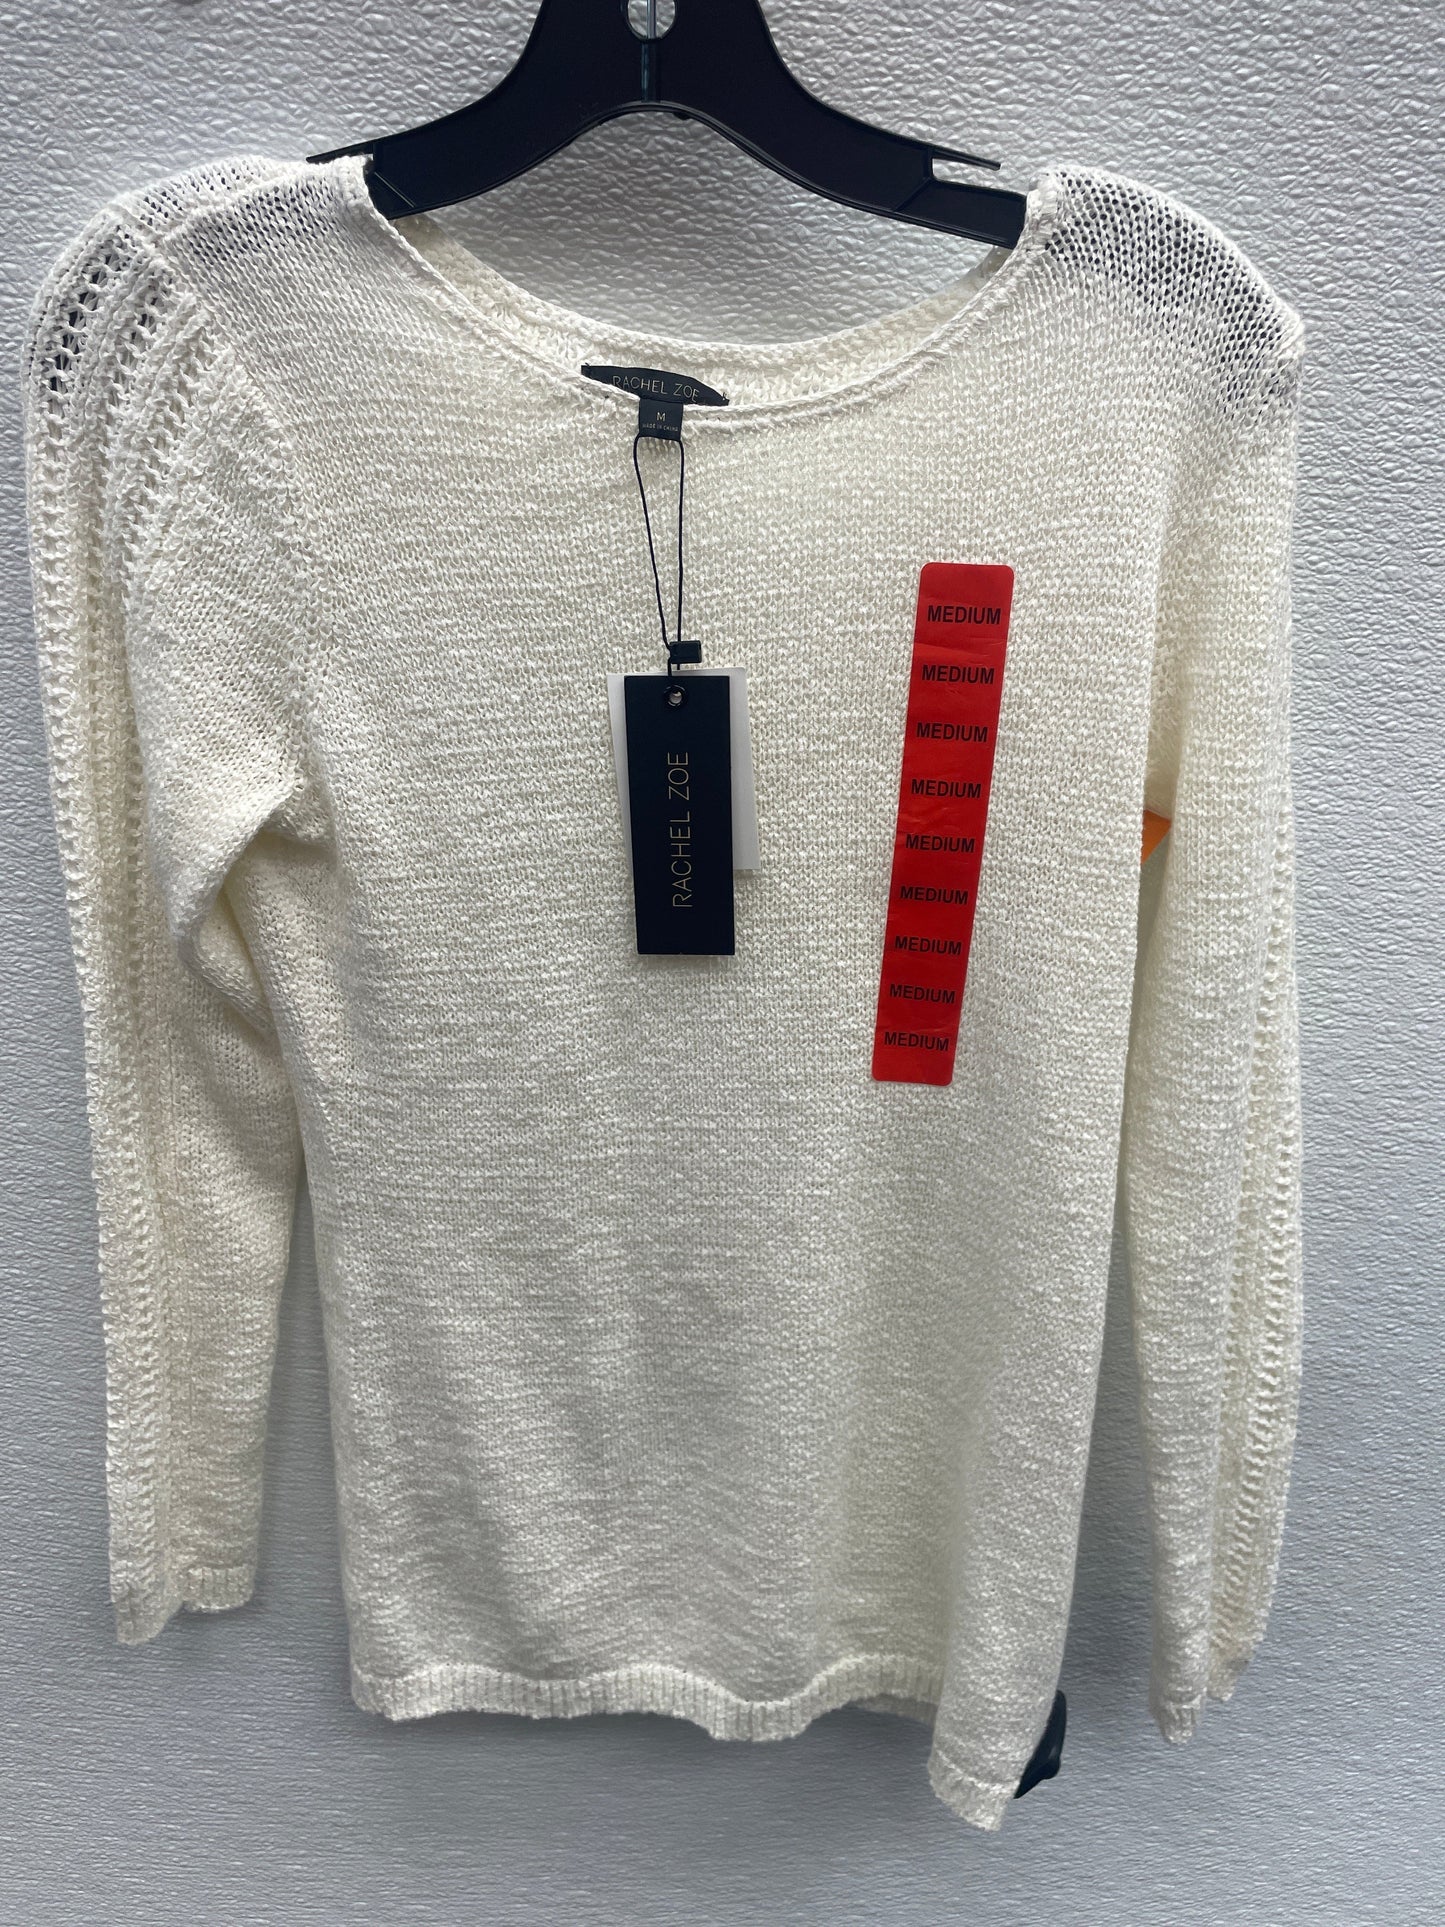 Sweater By Rachel Zoe  Size: M